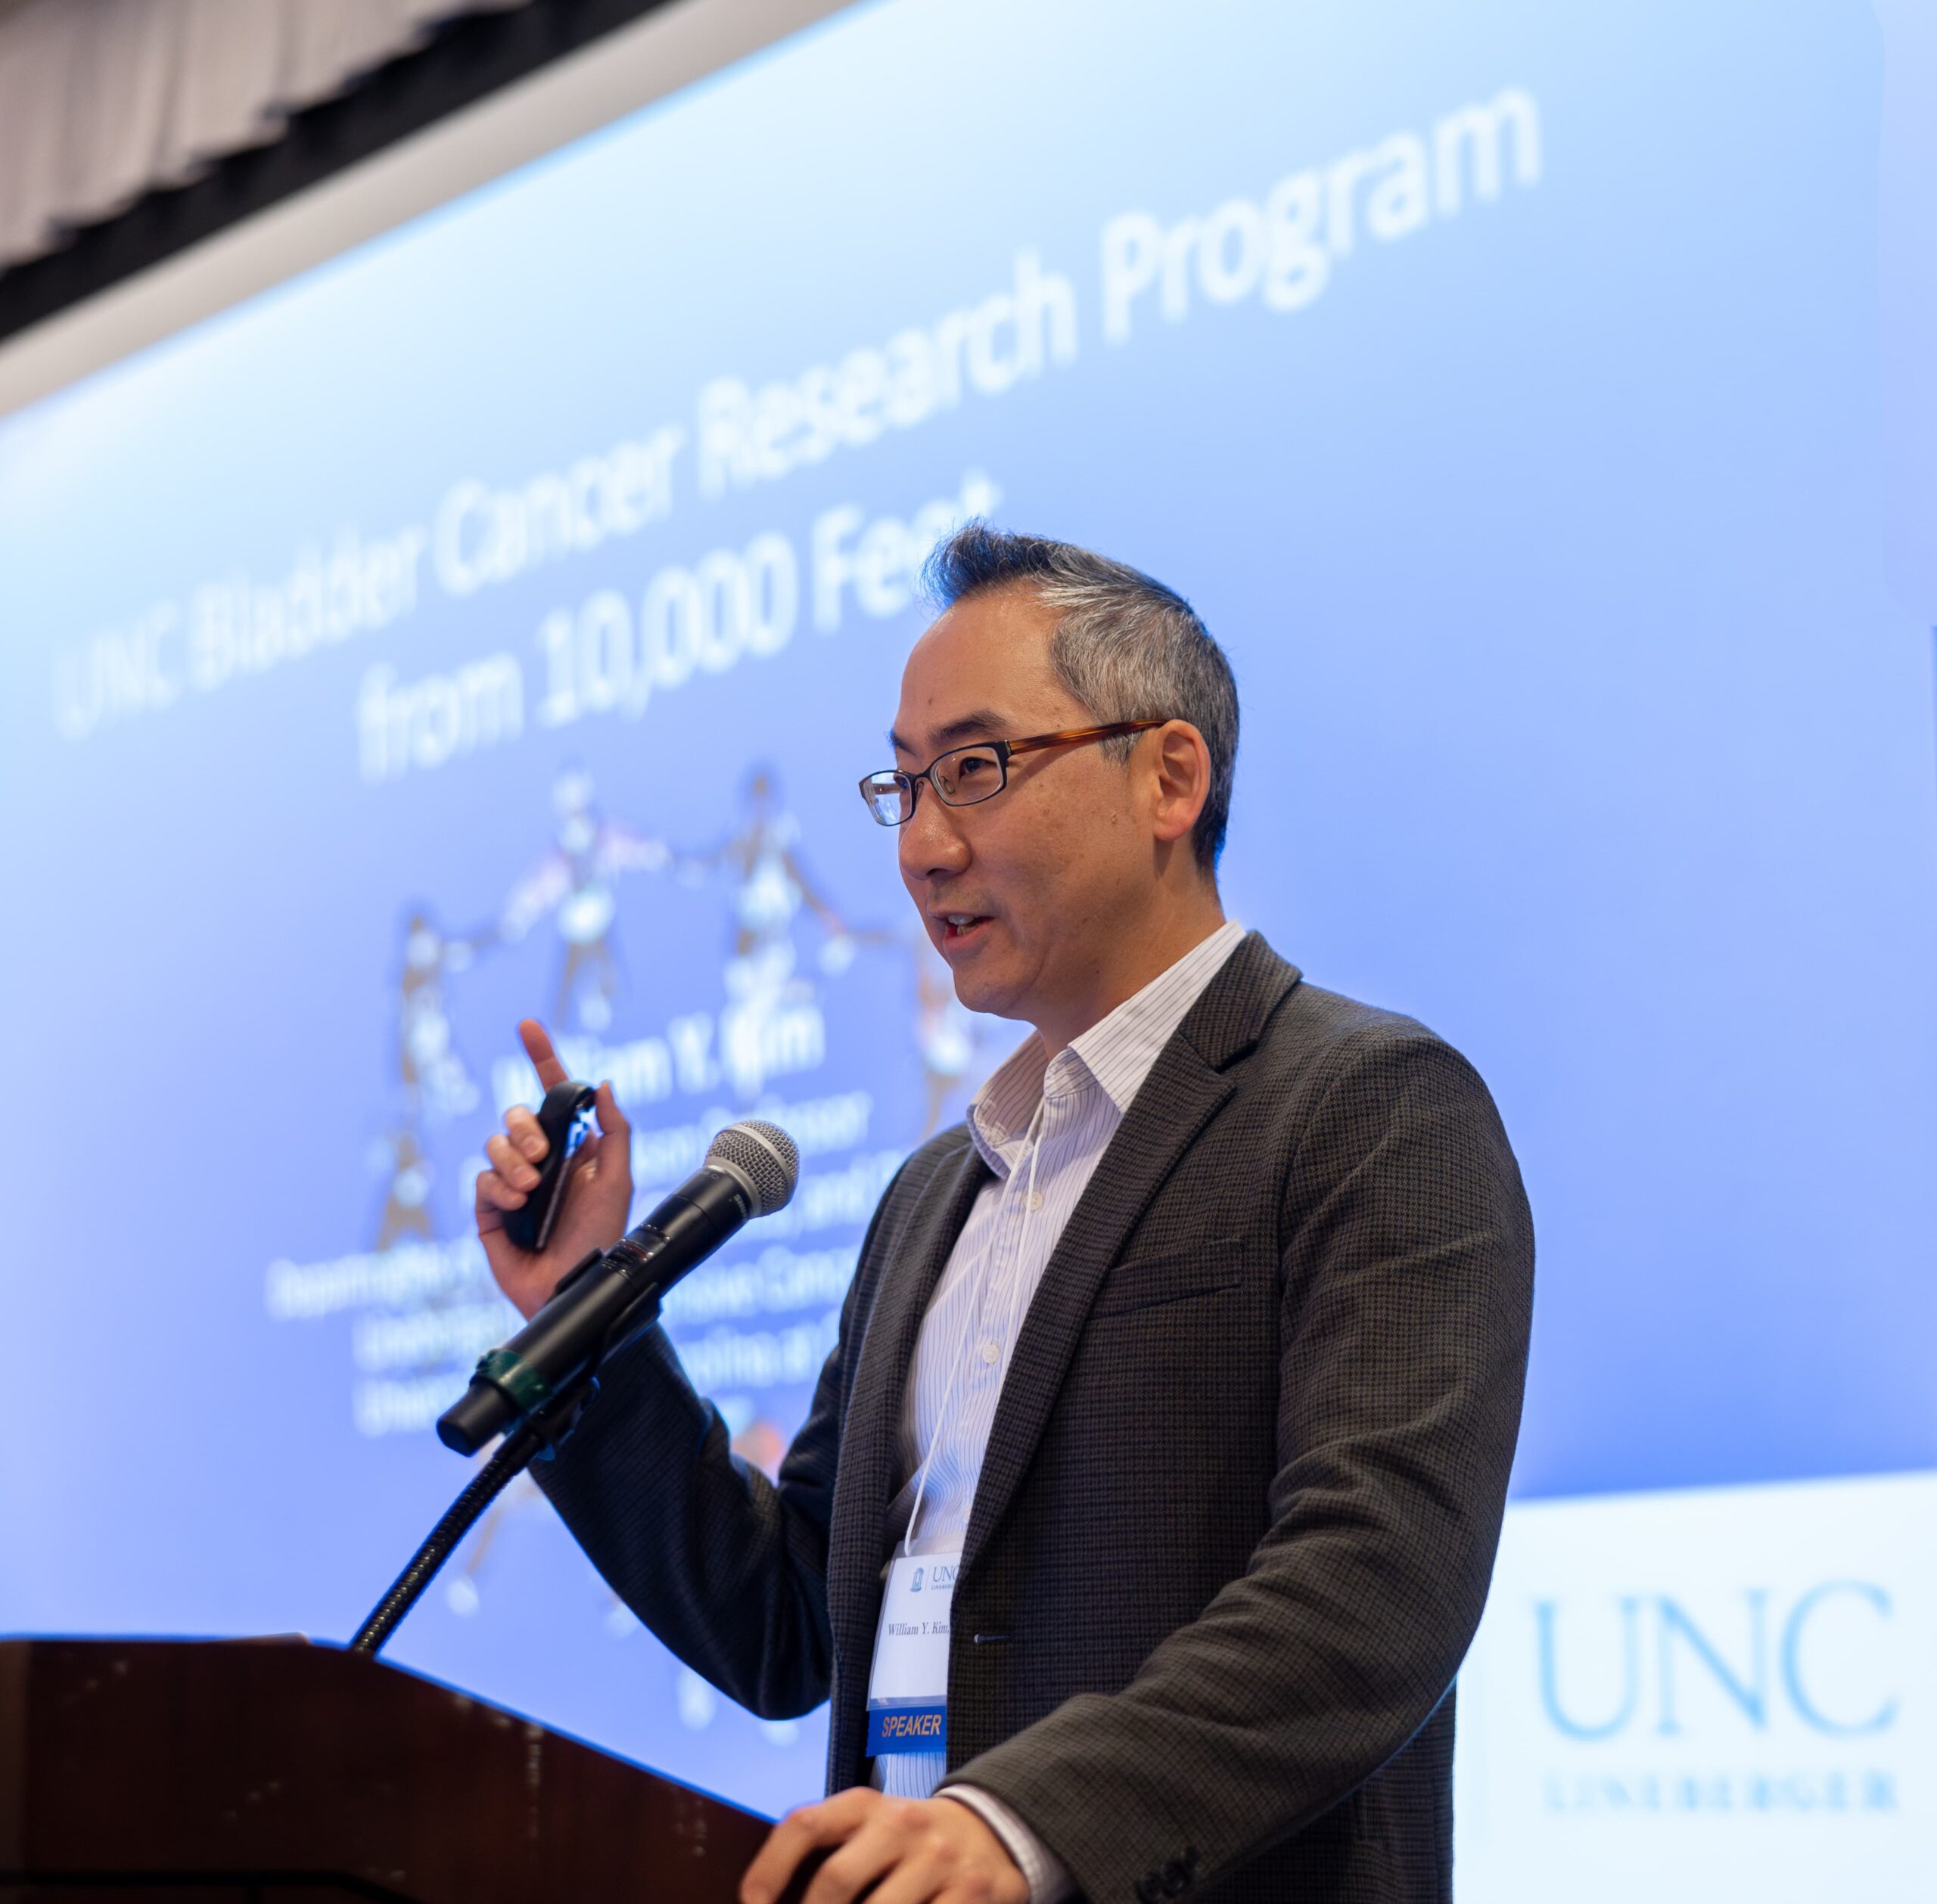 William Kim speaks at the UNC Lineberger Scientific Retreat